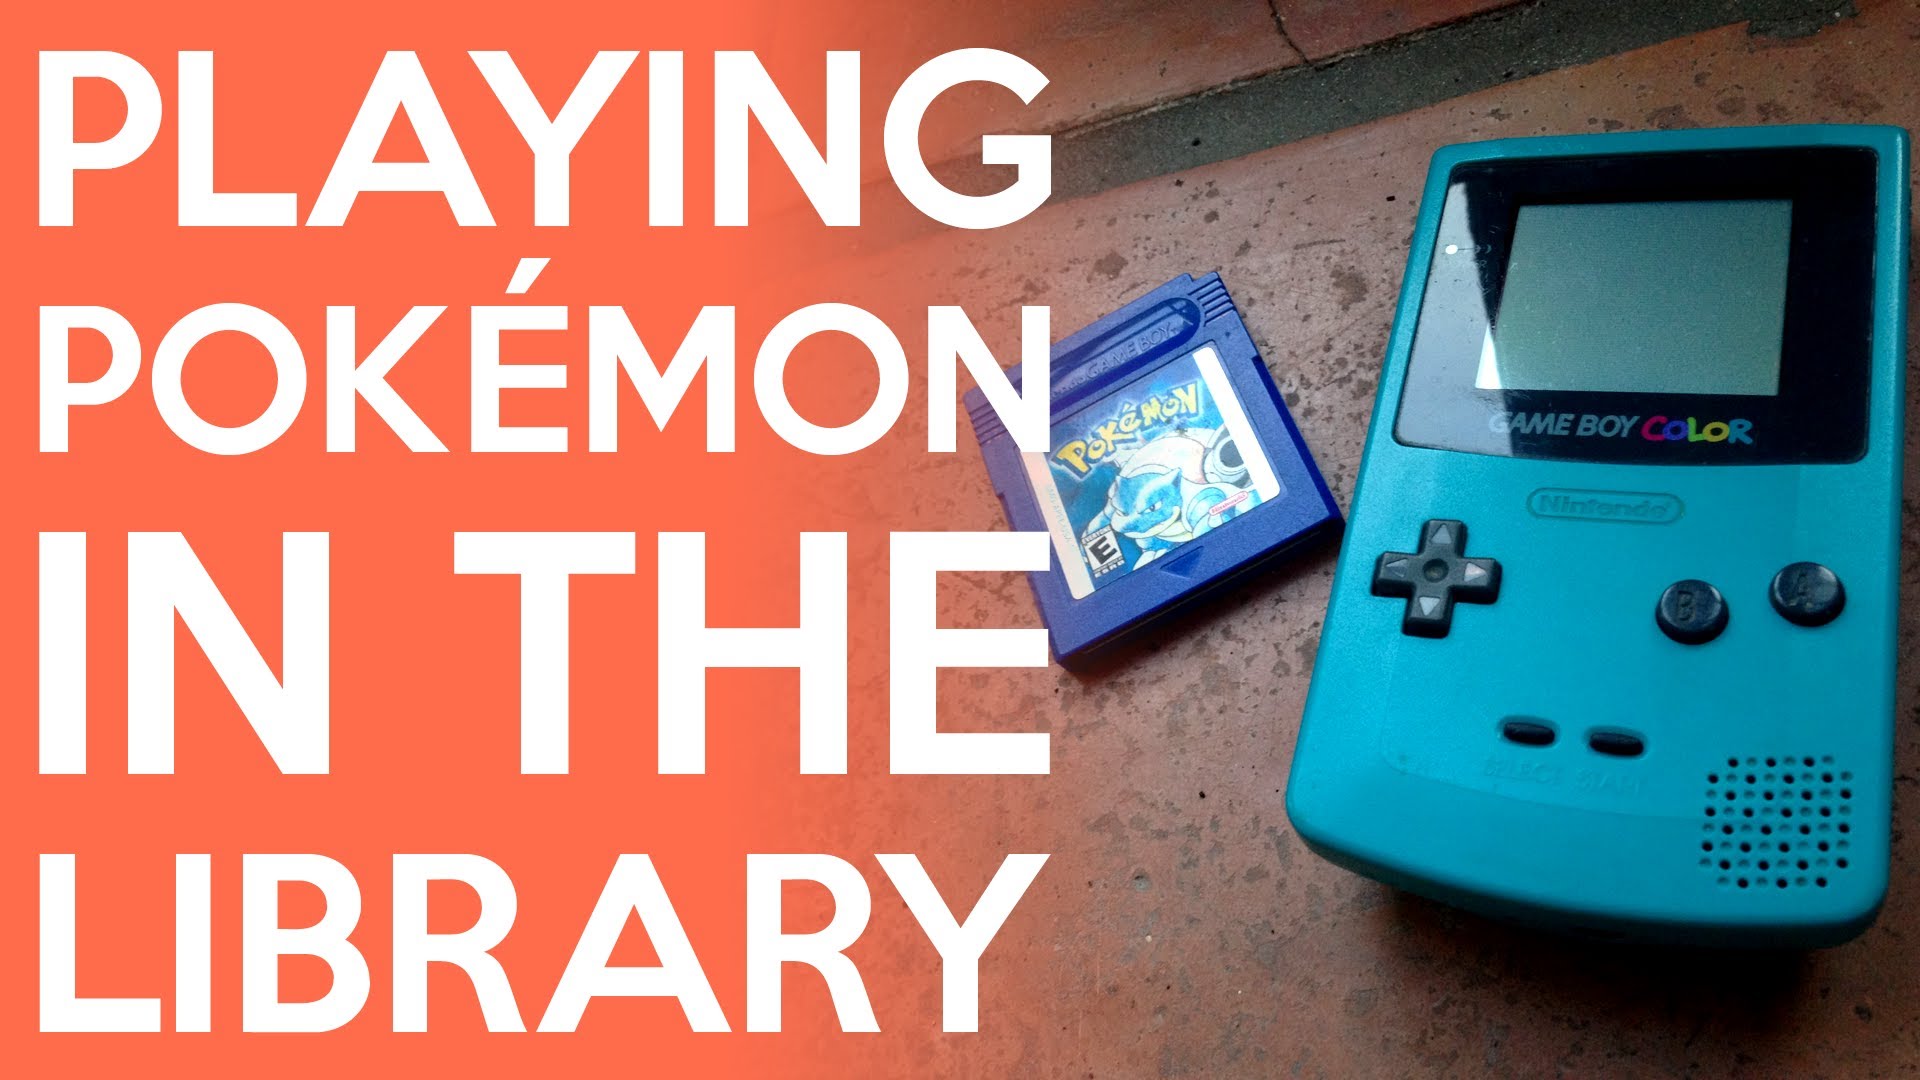 Παίζοντας Pokemon στη δημόσια βιβλιοθήκη!(video)